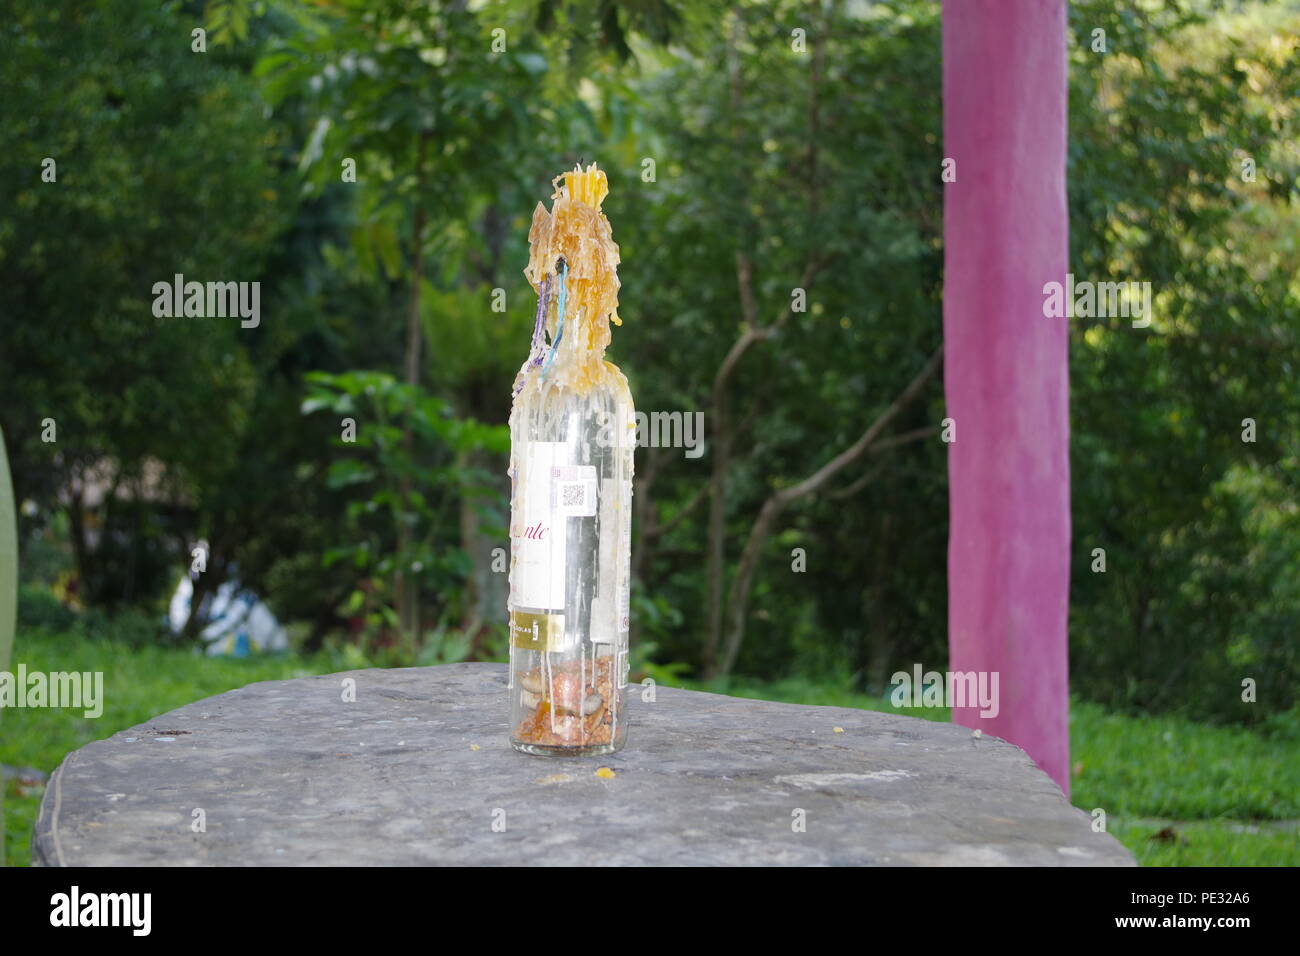 Kerze in einer Flasche, die Natur im Hintergrund Stockfoto